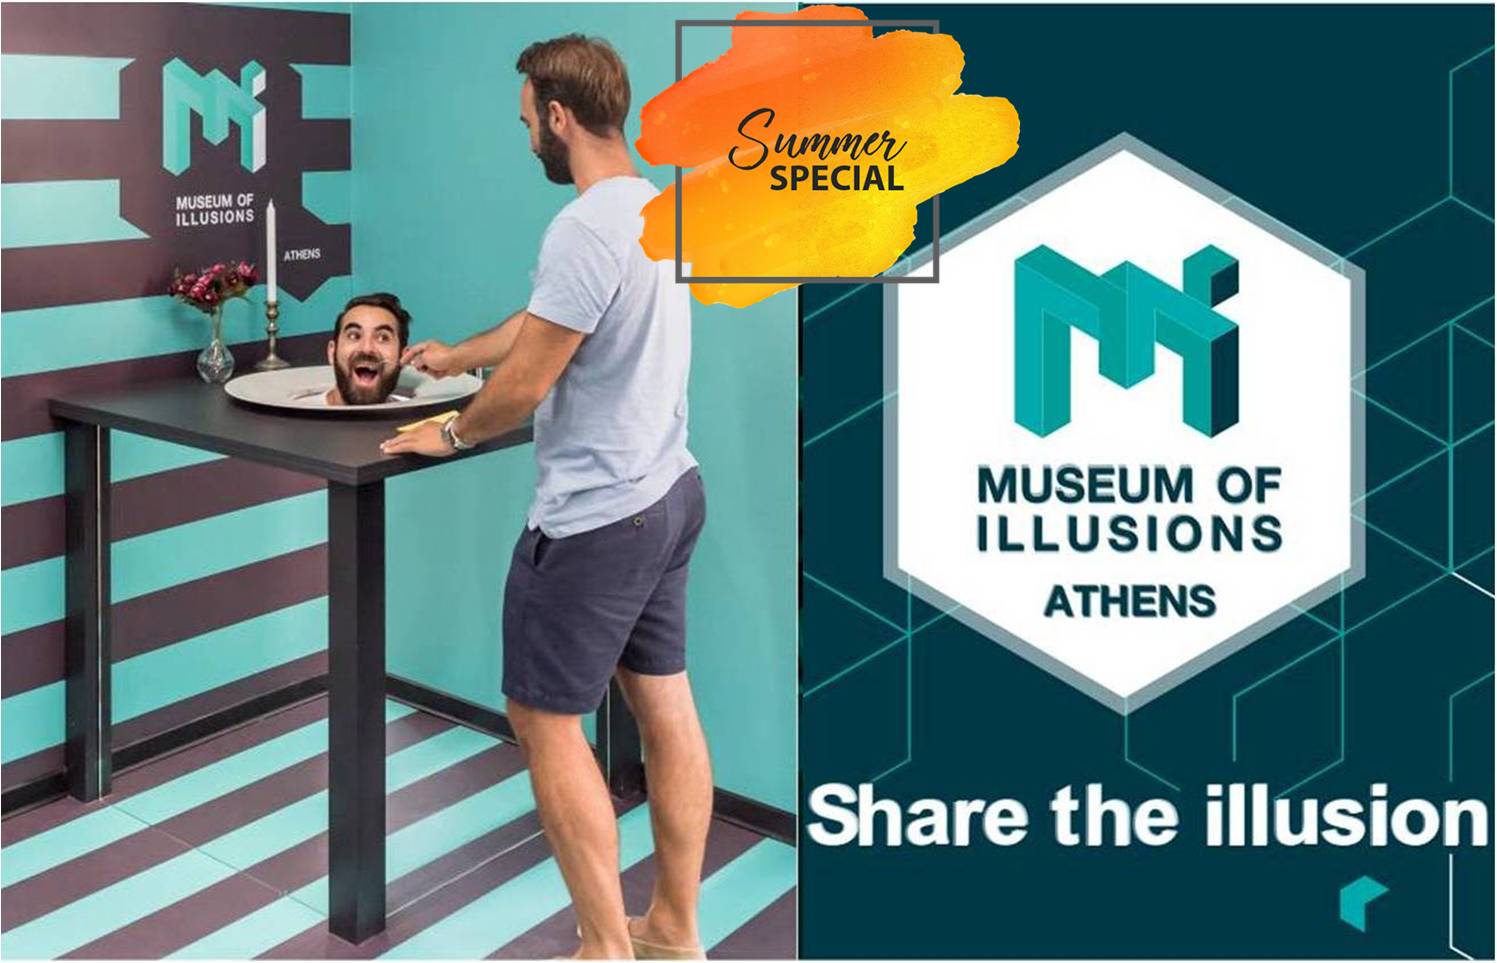 6€ από 9€ για είσοδο στο αγαπημένο ''Museum of Illusions Athens'' (Μουσείο Ψευδαισθήσεων) στο Μοναστηράκι, γιατί τίποτα δεν είναι όπως φαίνεται... ειδικά ΕΔΩ!